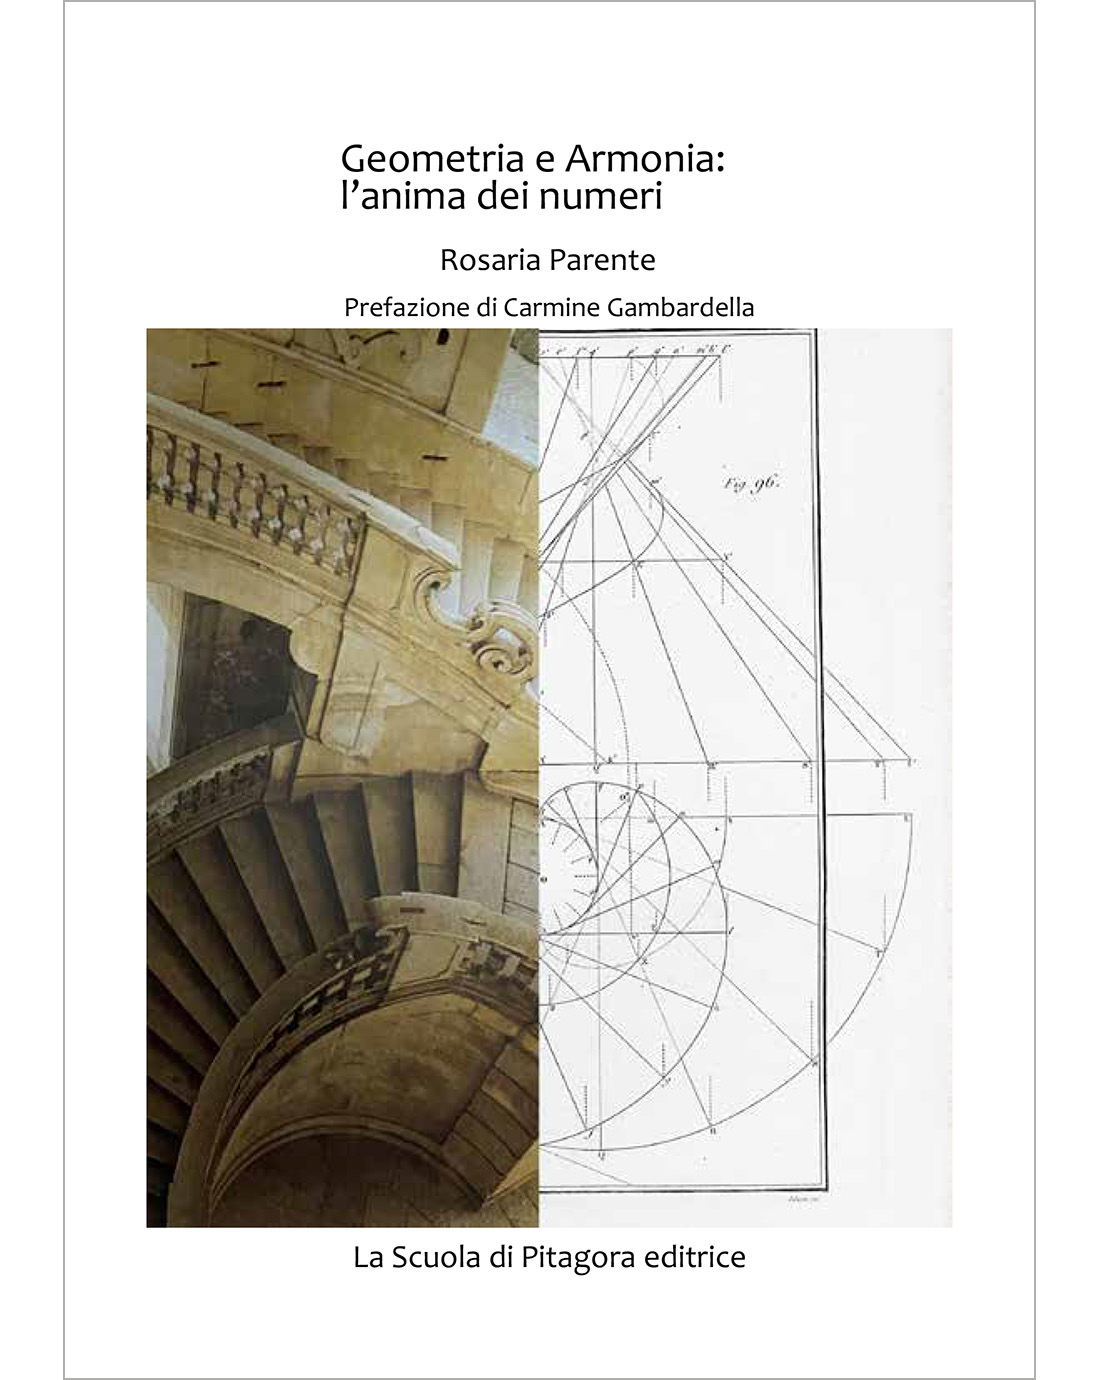 Geometria e Armonia: l’anima dei numeri (Open Access)